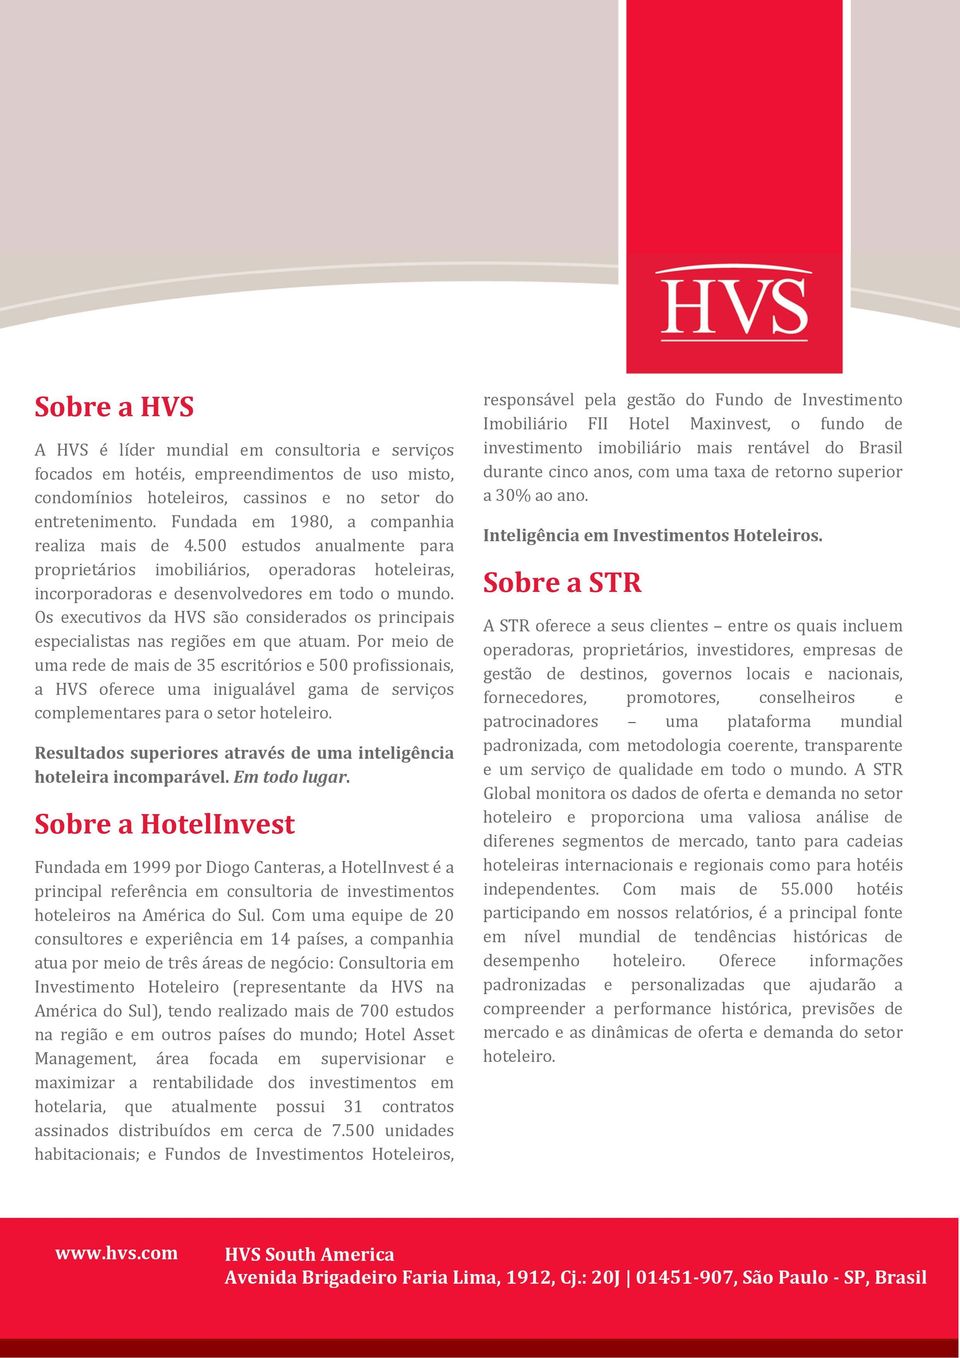 Os executivos da HVS são considerados os principais especialistas nas regiões em que atuam.